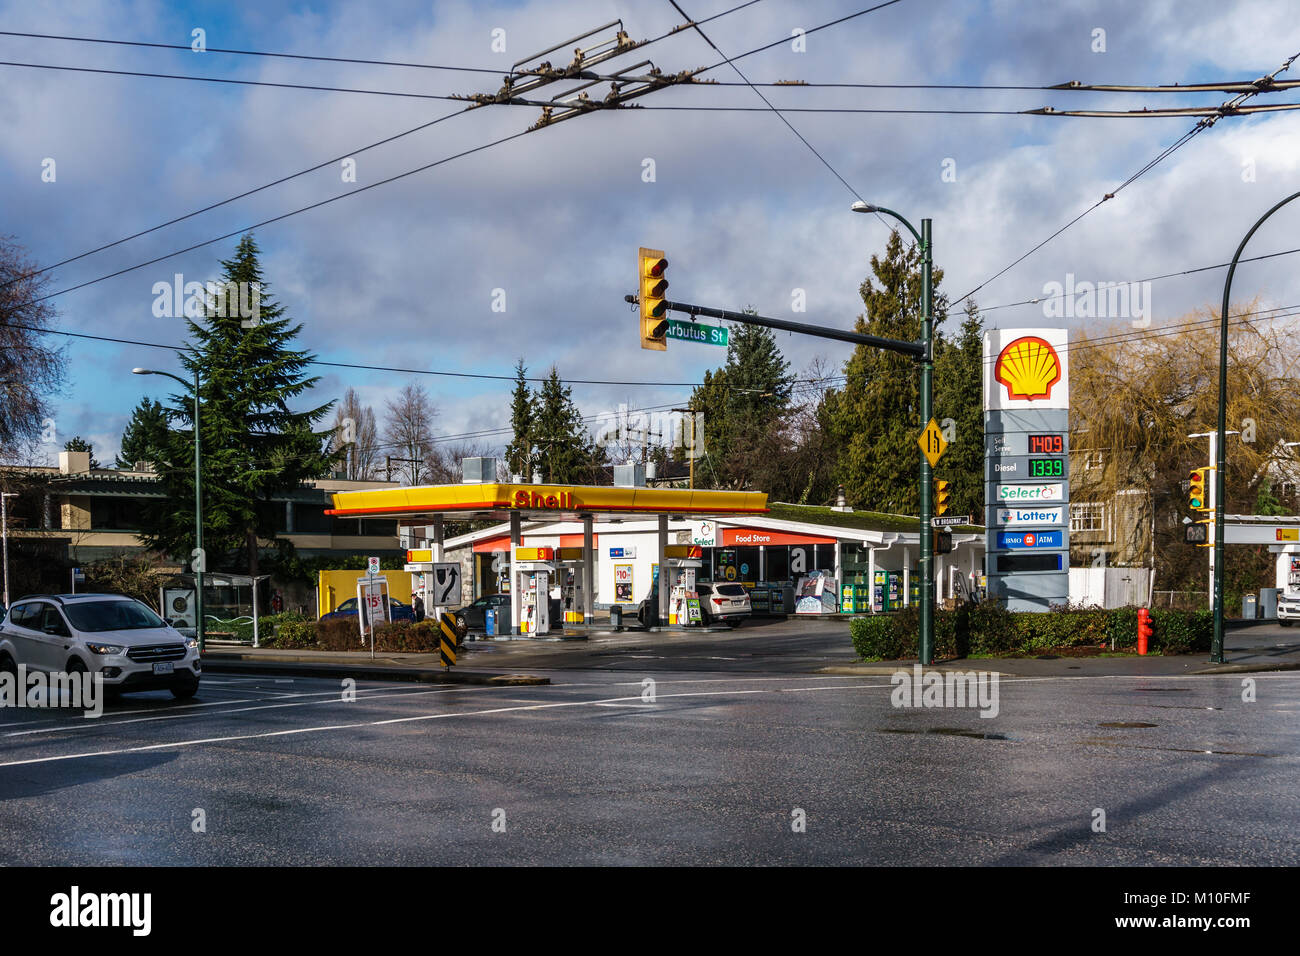 VANCOUVER, Kanada - 21. Januar 2018: Britische niederländischen multinationalen Öl- und Gasunternehmen Shell Tankstelle und Supermarkt am Arbutus Straße und Br Stockfoto